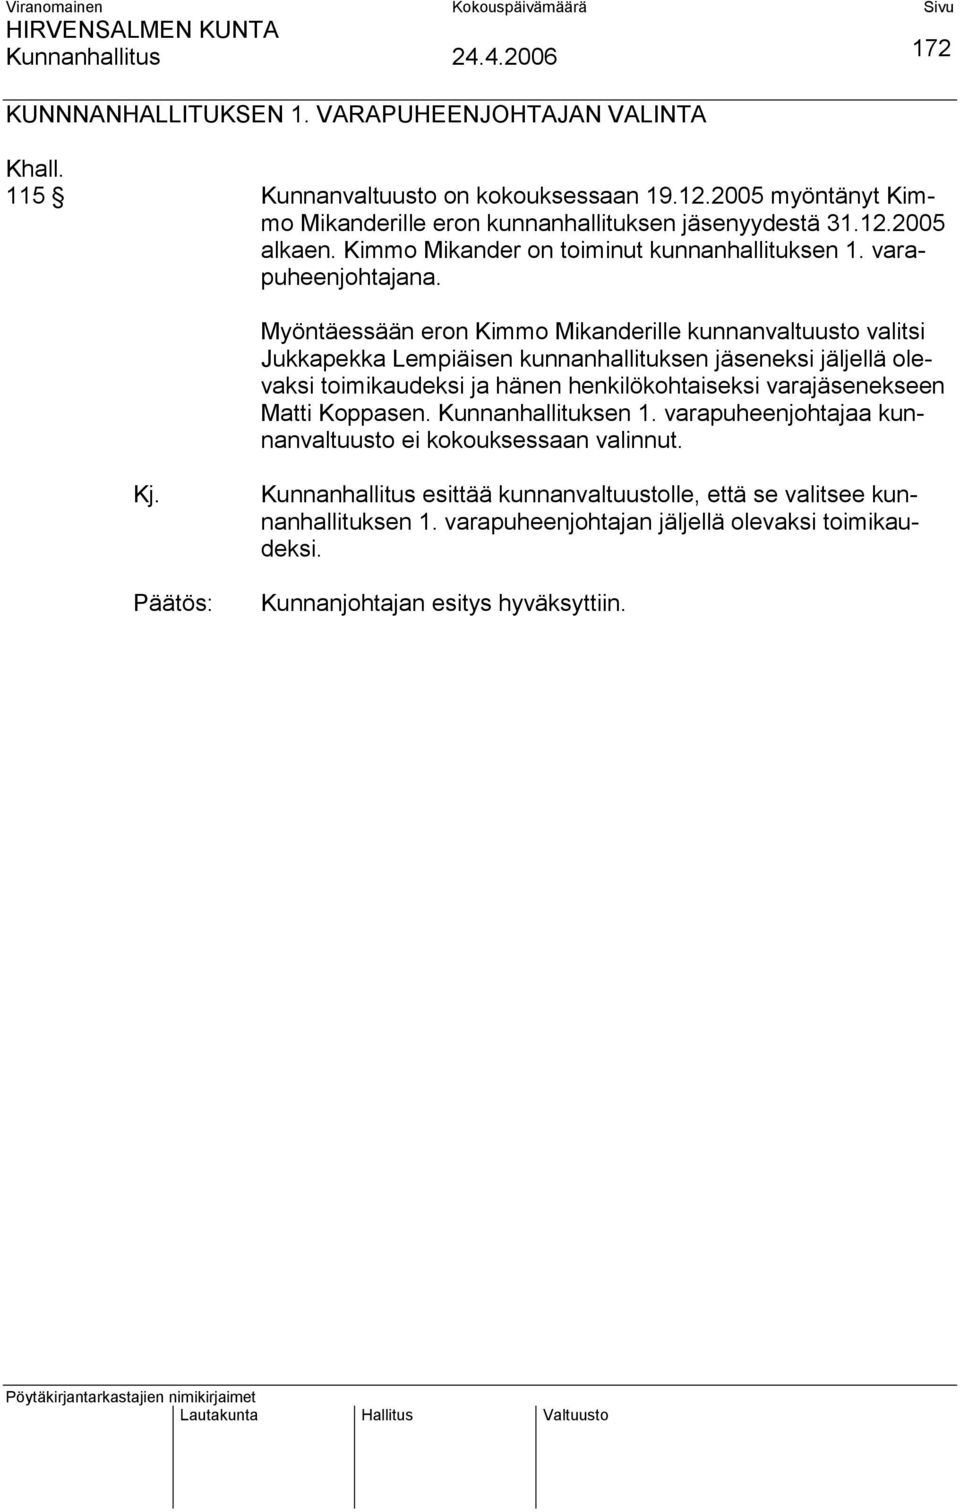 172 Myöntäessään eron Kimmo Mikanderille kunnanvaltuusto valitsi Jukkapekka Lempiäisen kunnanhallituksen jäseneksi jäljellä olevaksi toimikaudeksi ja hänen